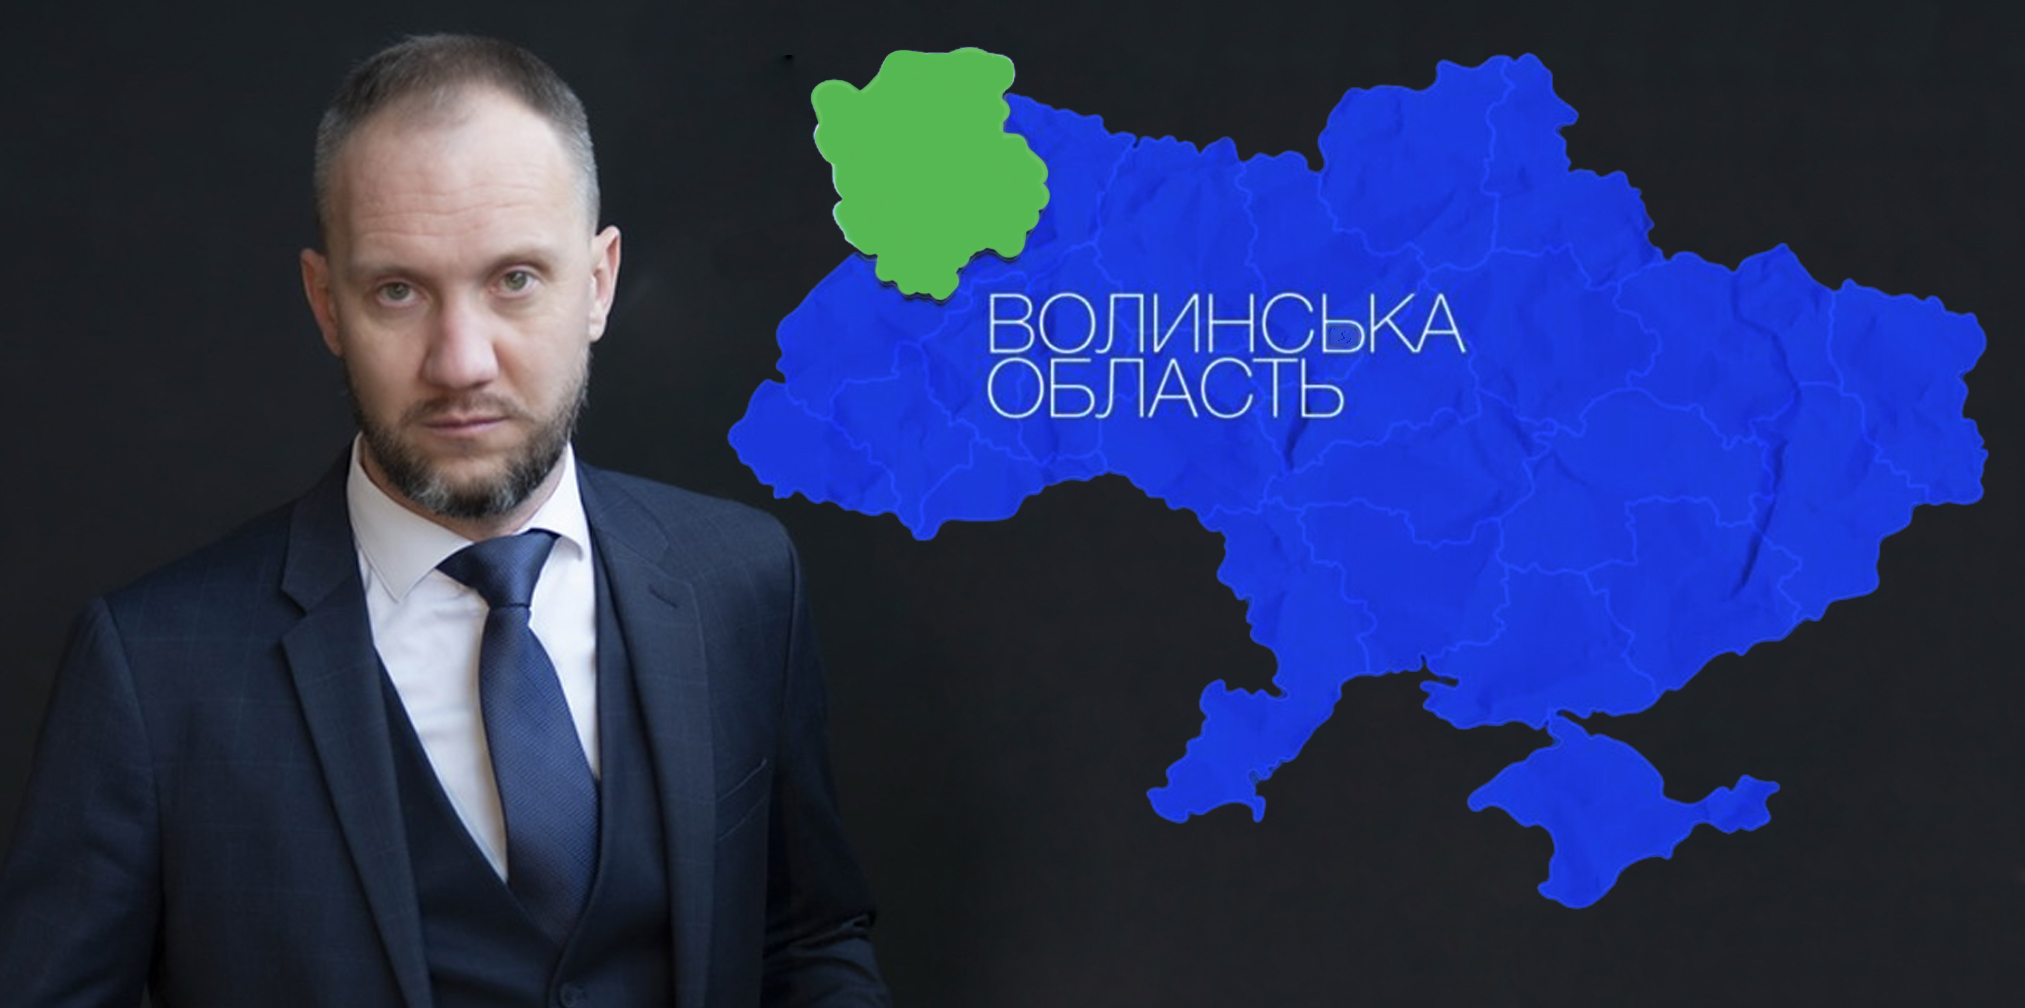 Нардеп від «Слуги народу» Стернійчук саботує на Волині відкликання депутатів (відео)